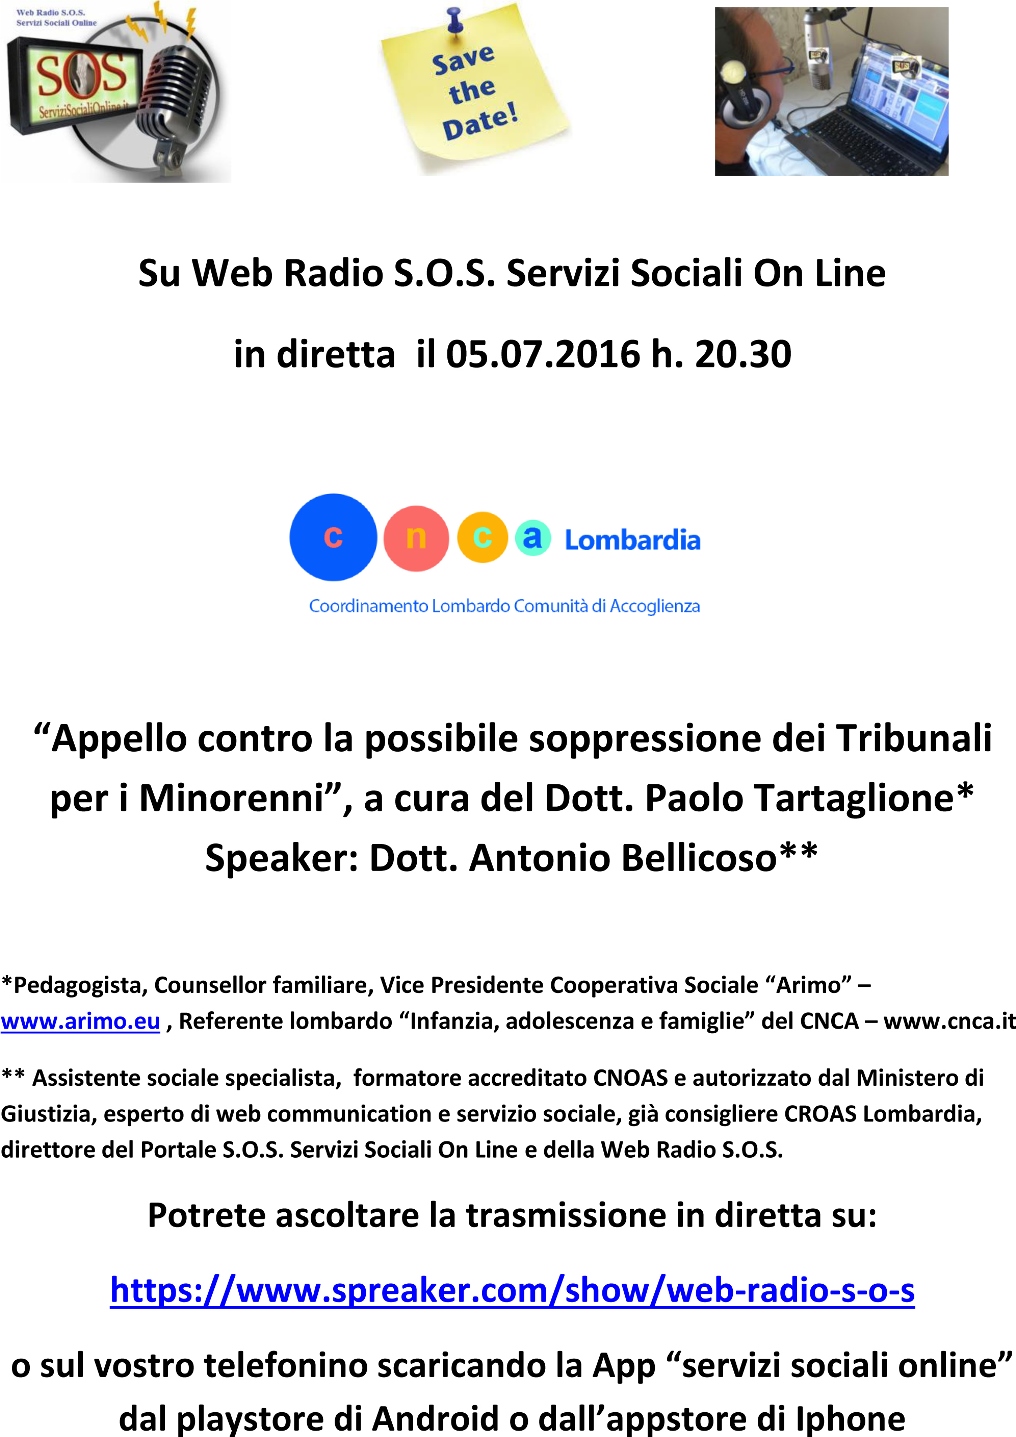 manifesto web radio s.o.s. Paolo Tartaglione del 5.6.16